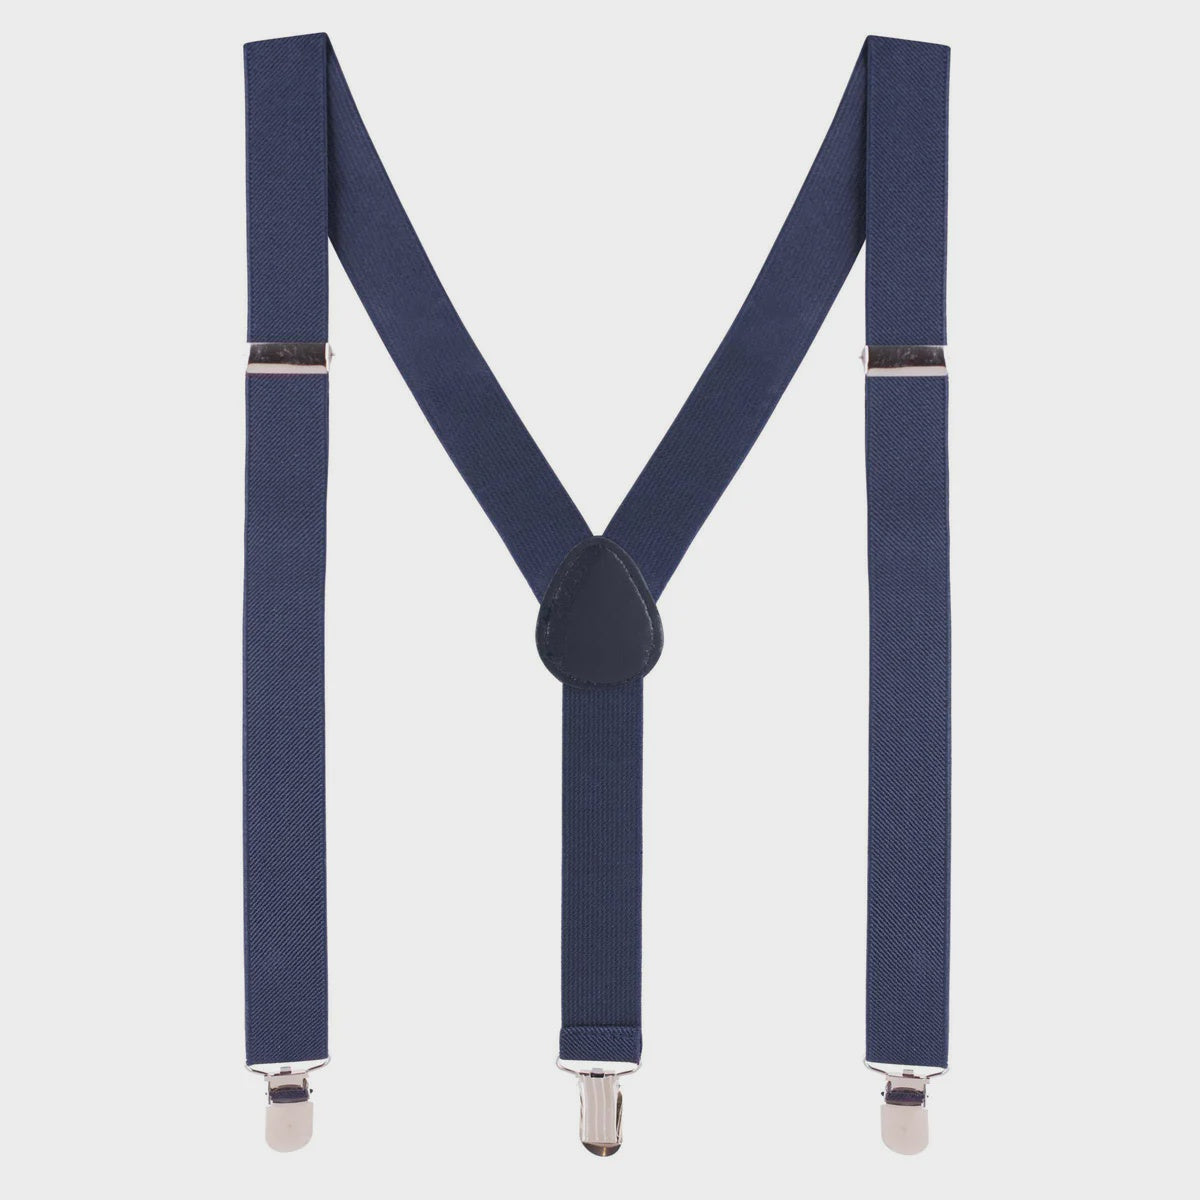 Designer Kidz | Bradley Suspenders - Navy